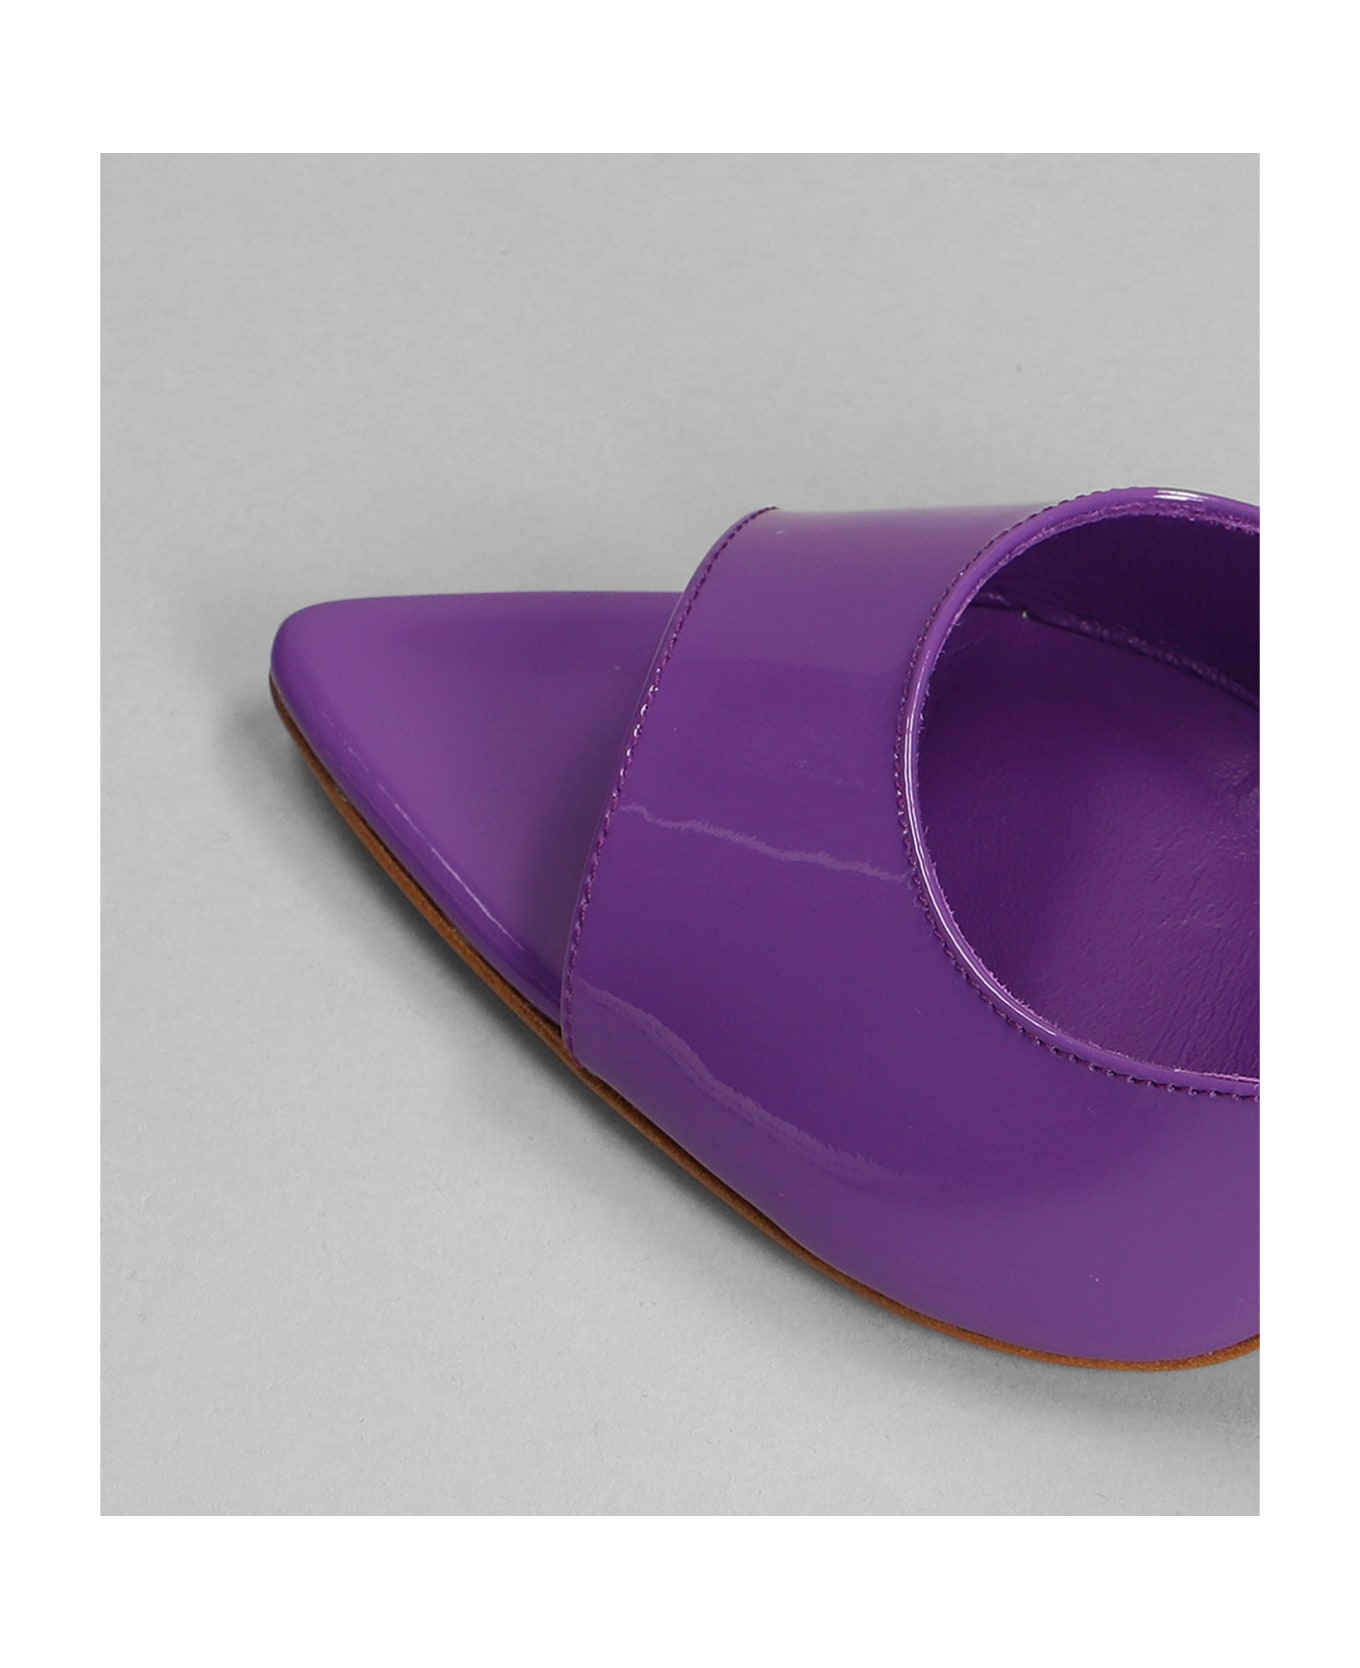 GIA BORGHINI Perni 04 Sandals In Viola Patent Leather - Purple